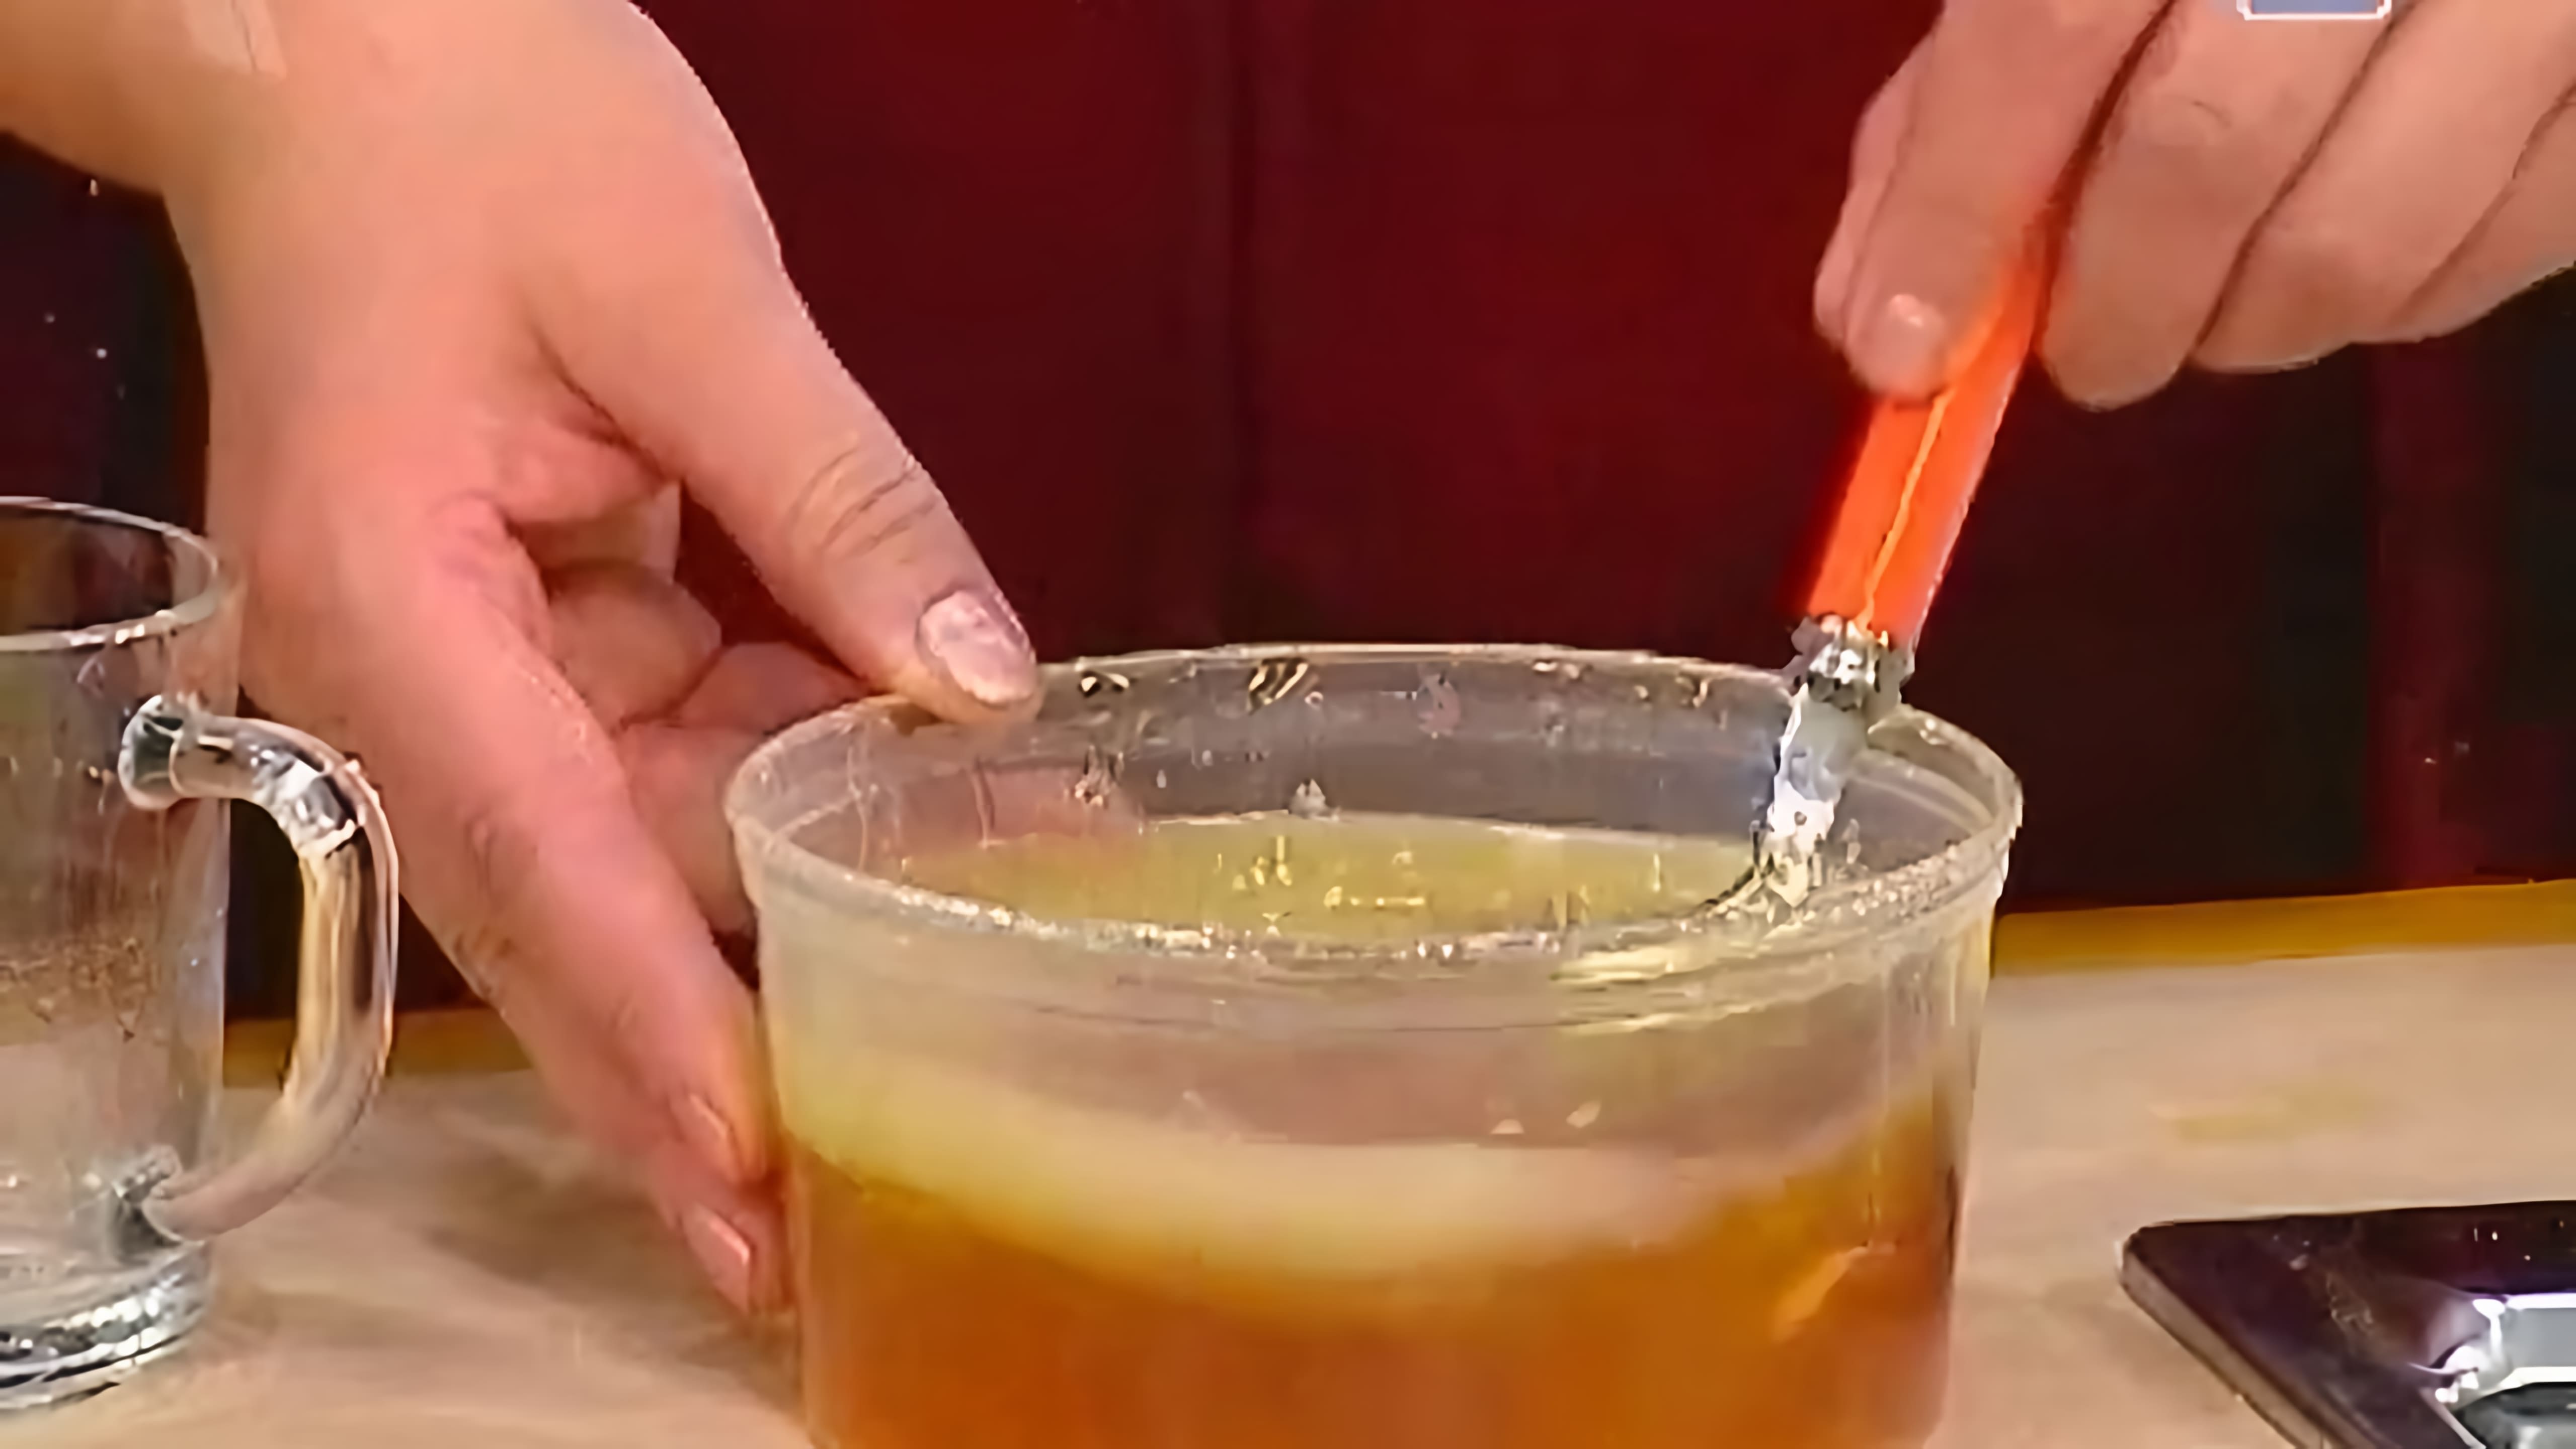 В этом видео рассказывается о рецепте эликсира молодости, который состоит из мёда, лимонного сока и оливкового масла